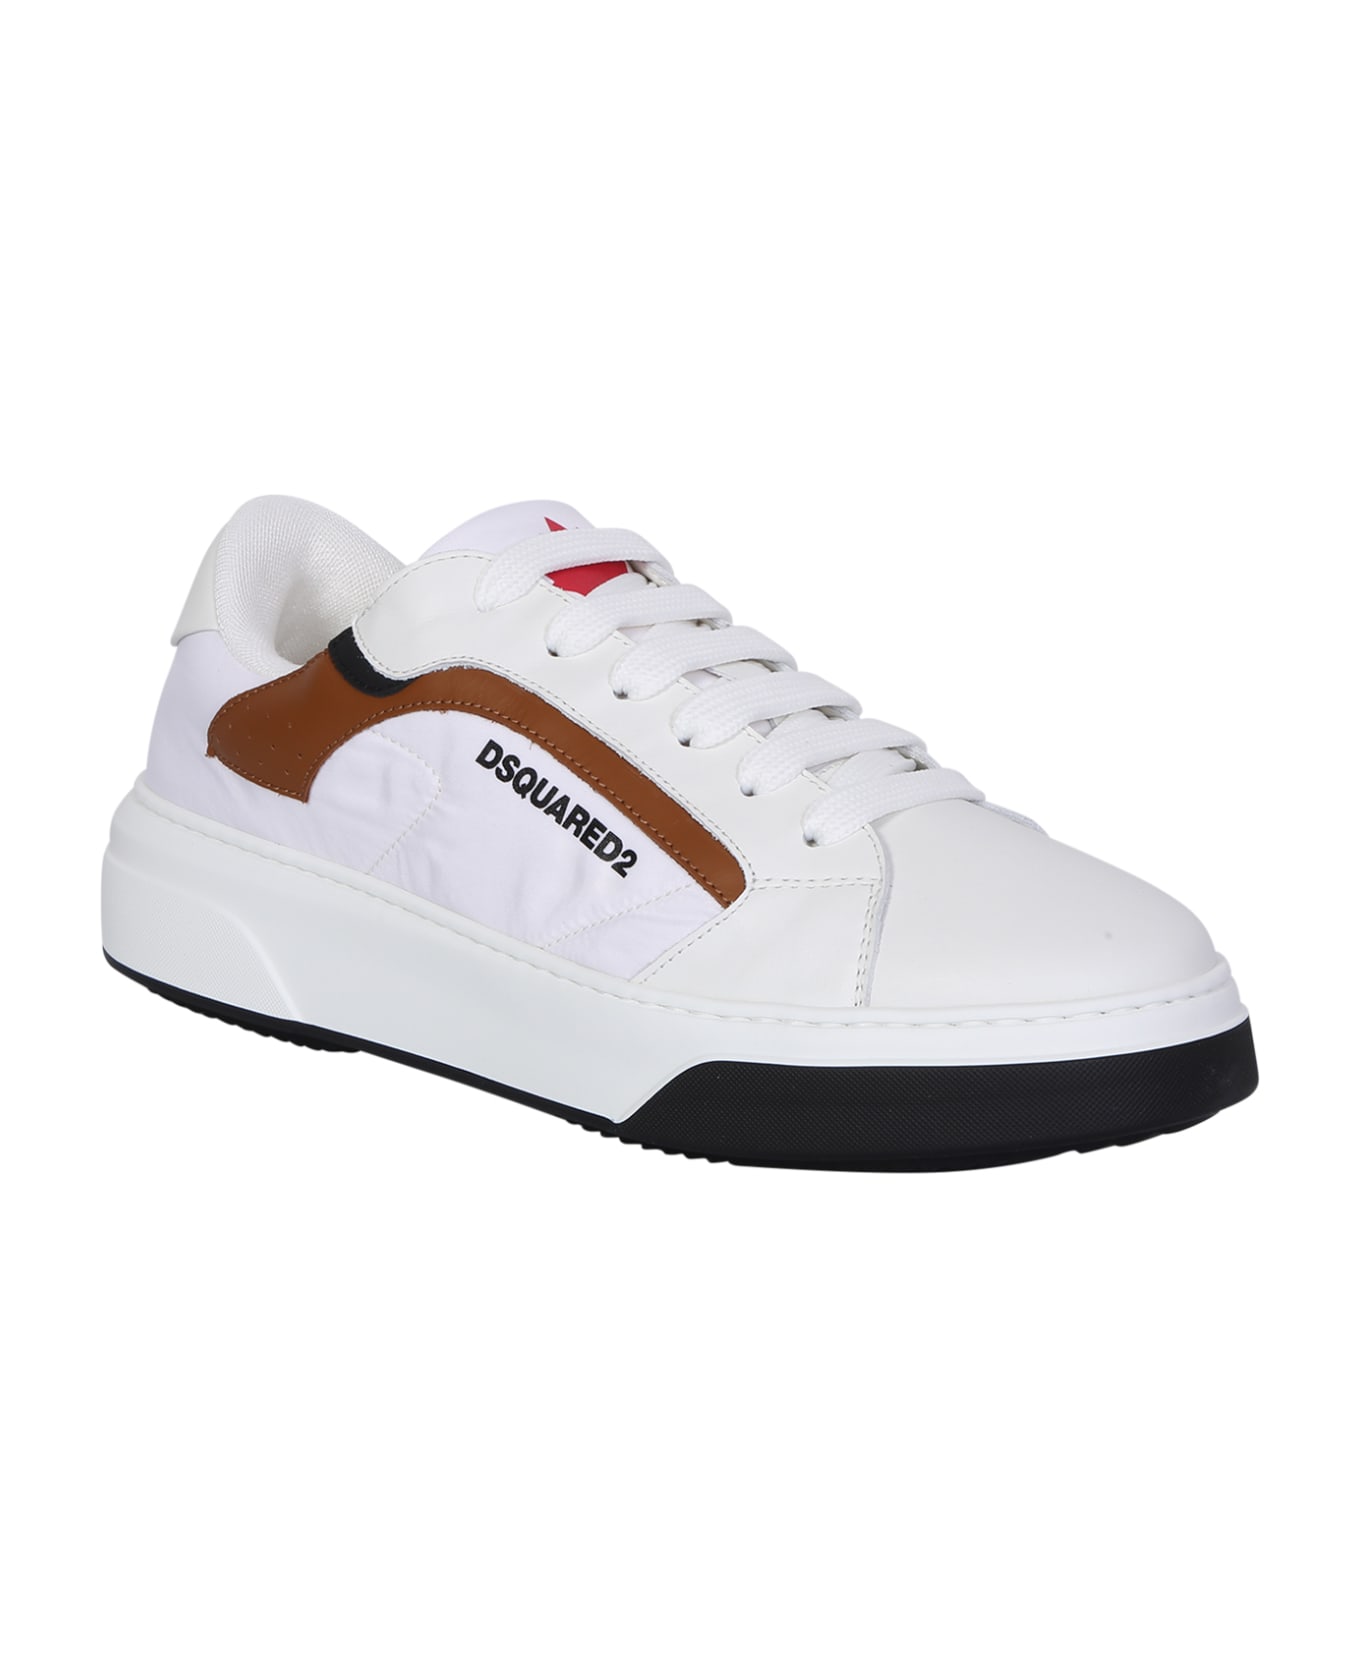 Dsquared2 Nylon White Sneakers - White